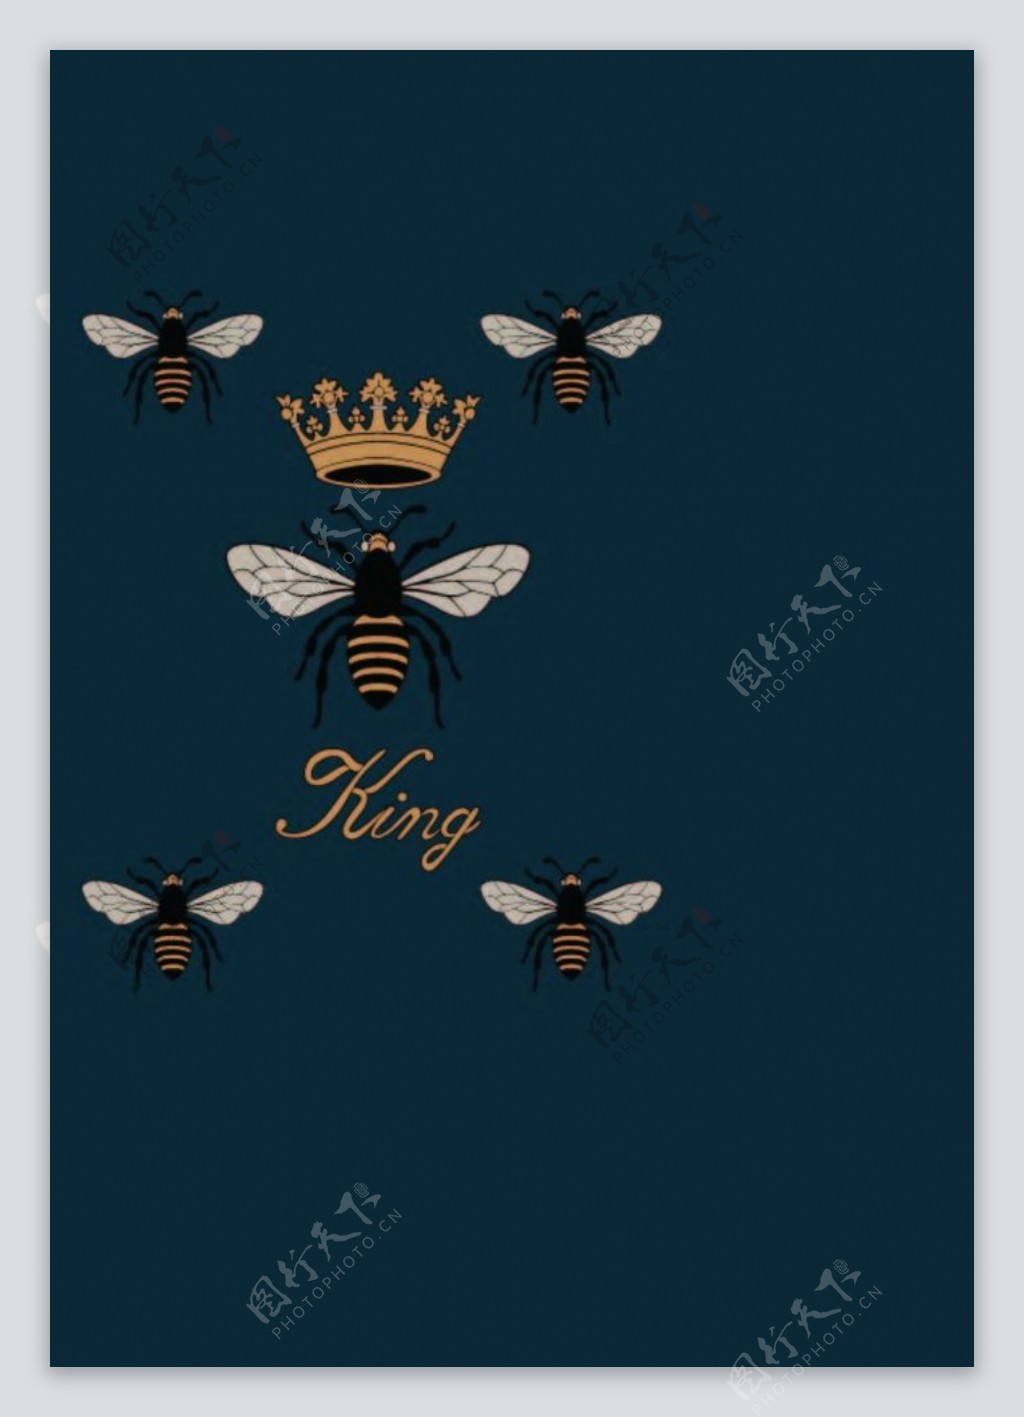 蜜蜂皇冠